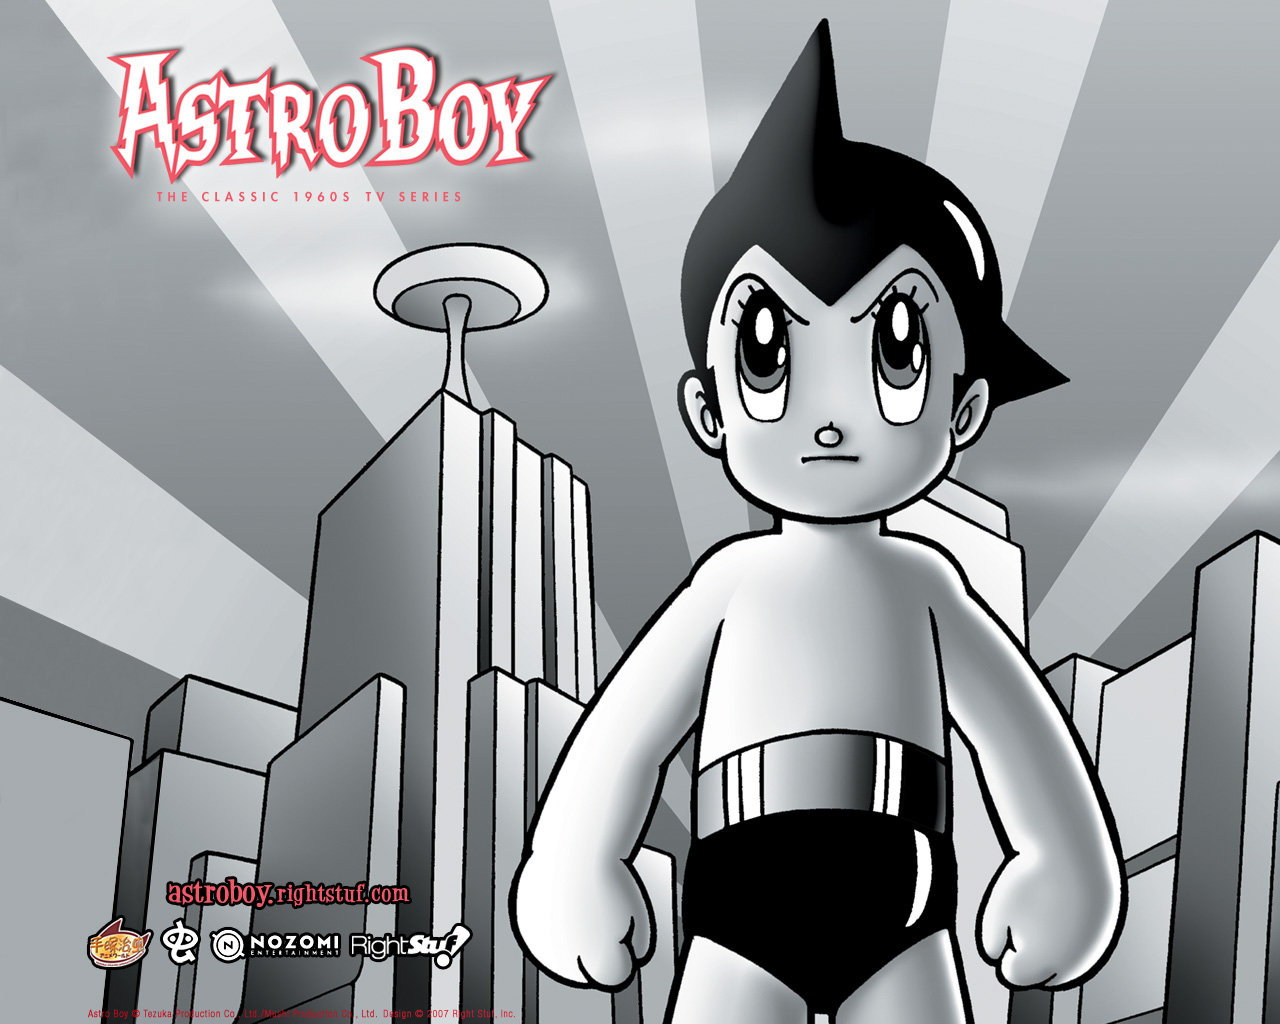 Los mejores fondos de pantalla de Astro Boy para la pantalla del teléfono